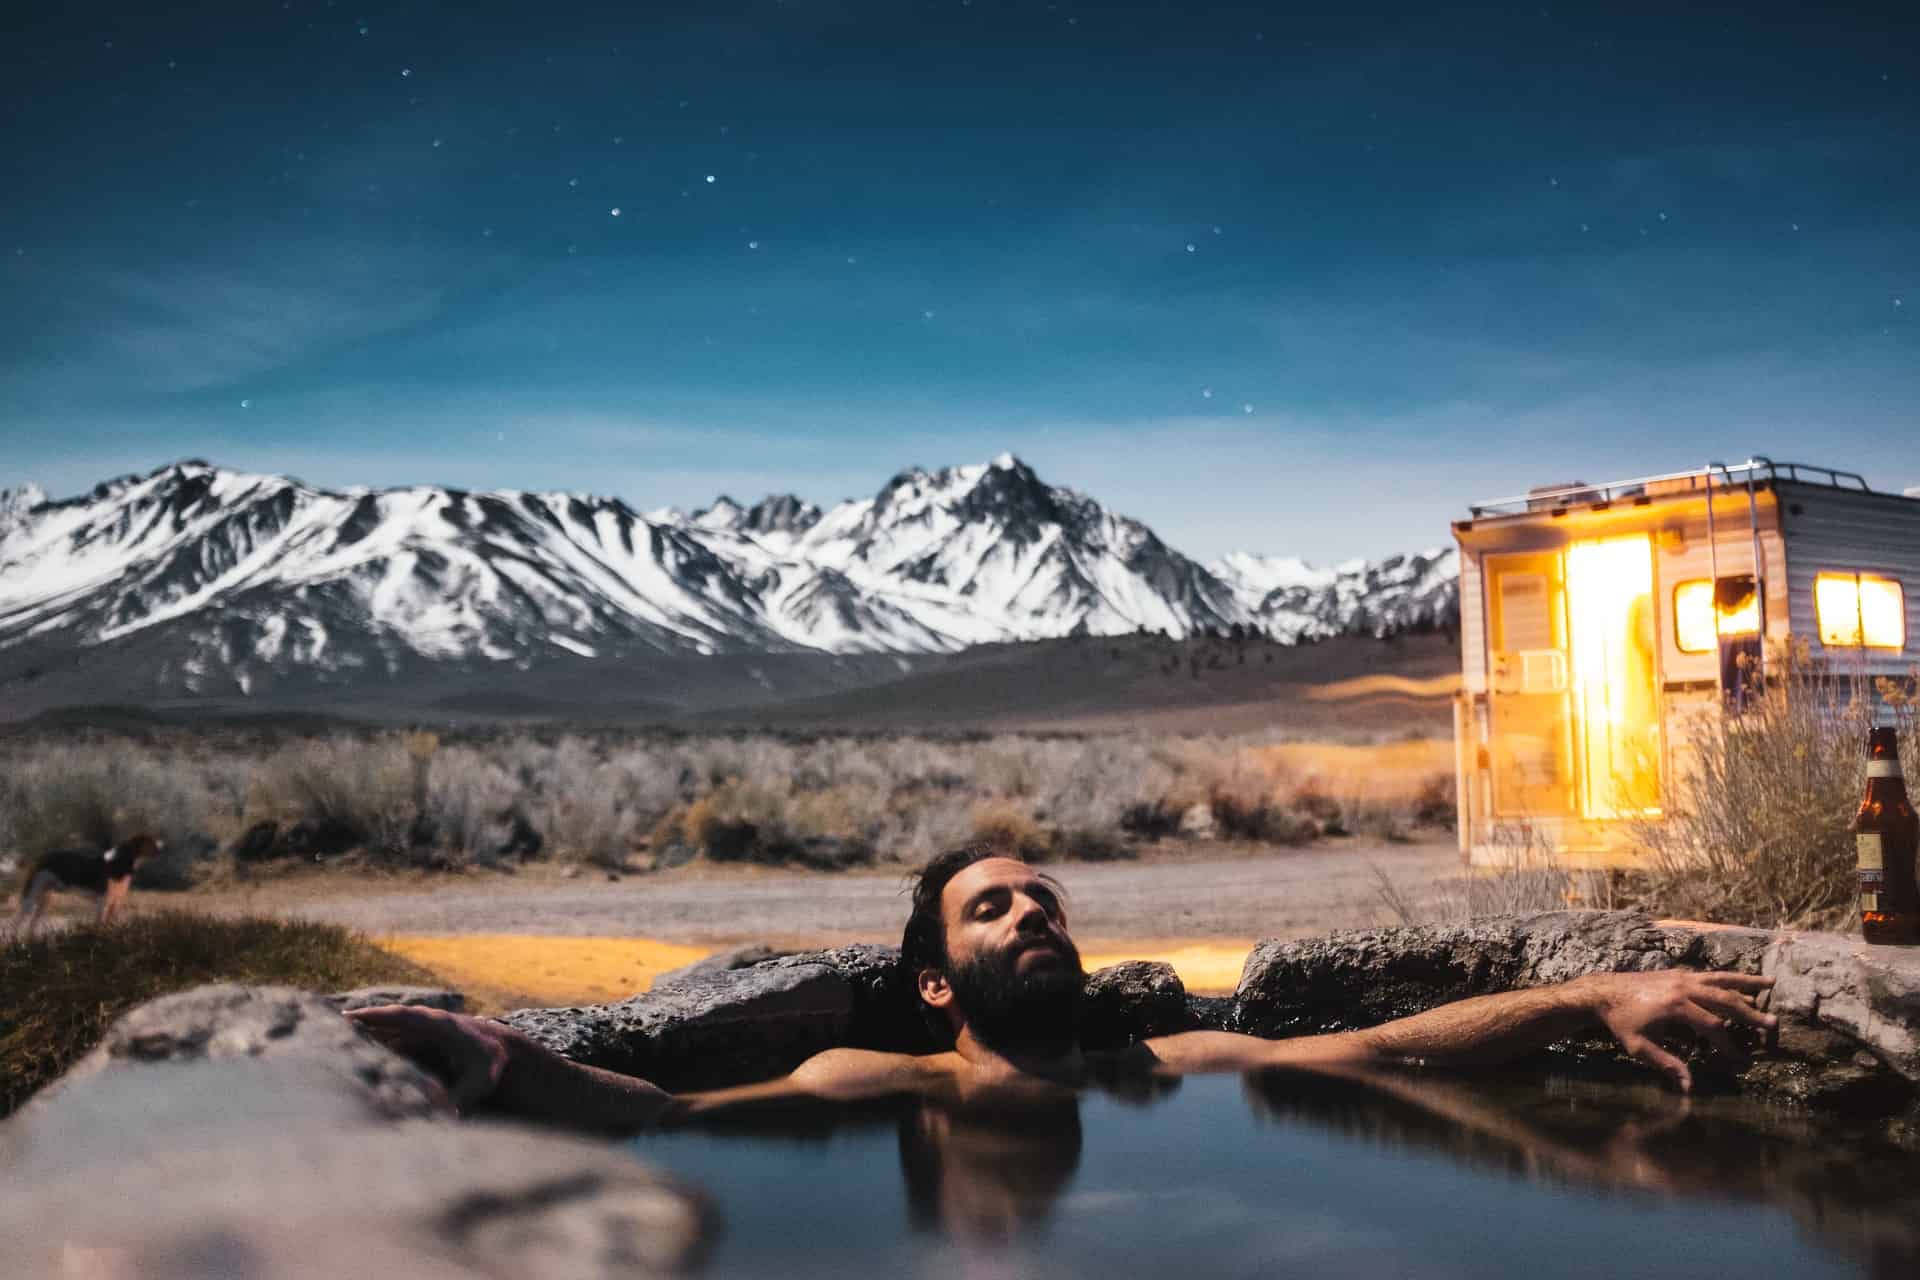 Man relaxing in hot springs